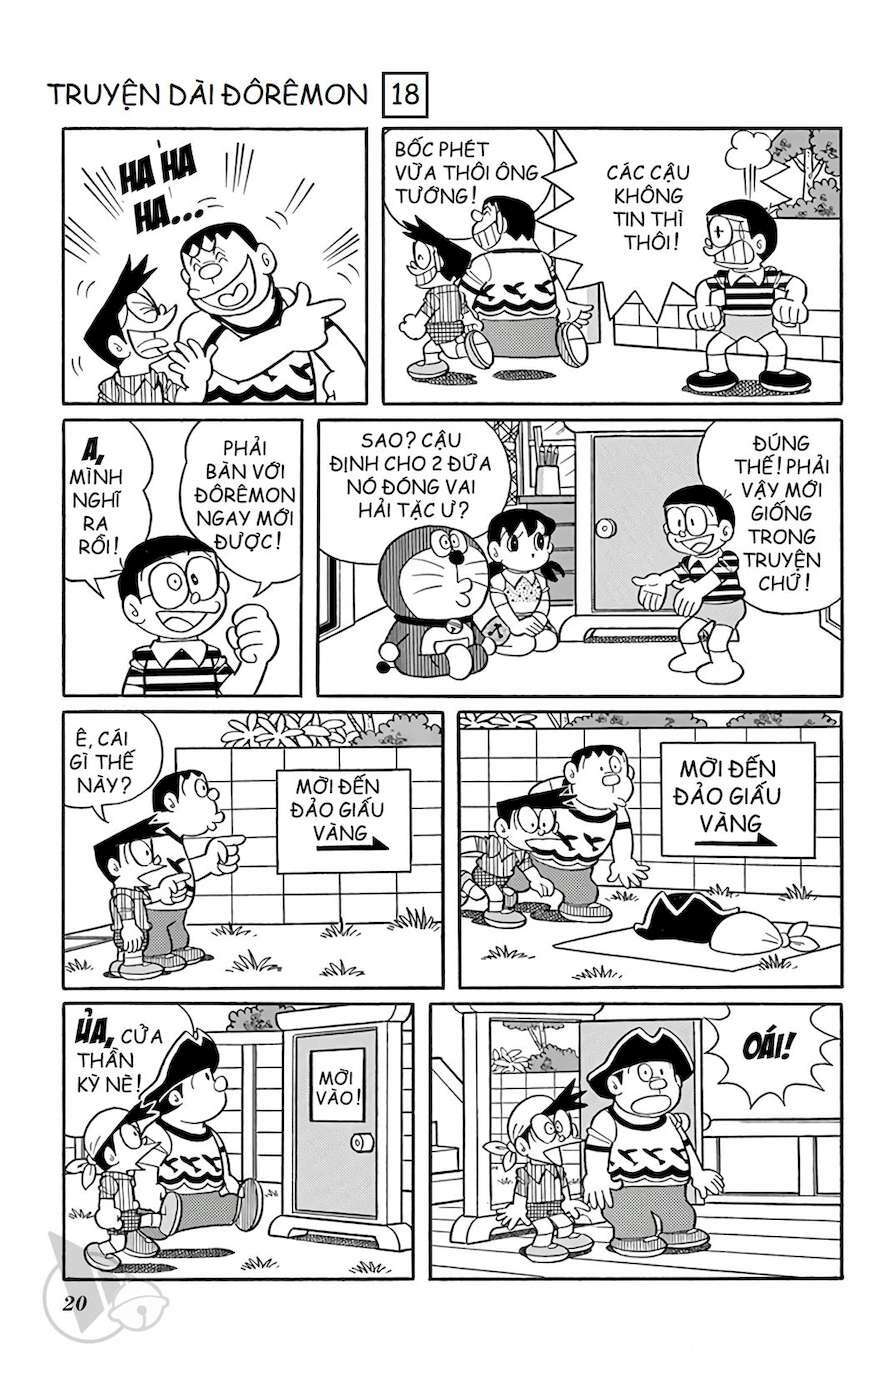 Truyện Tranh Doraemon: Cuộc Phiêu Lưu Đến Đảo Giấu Vàng trang 19